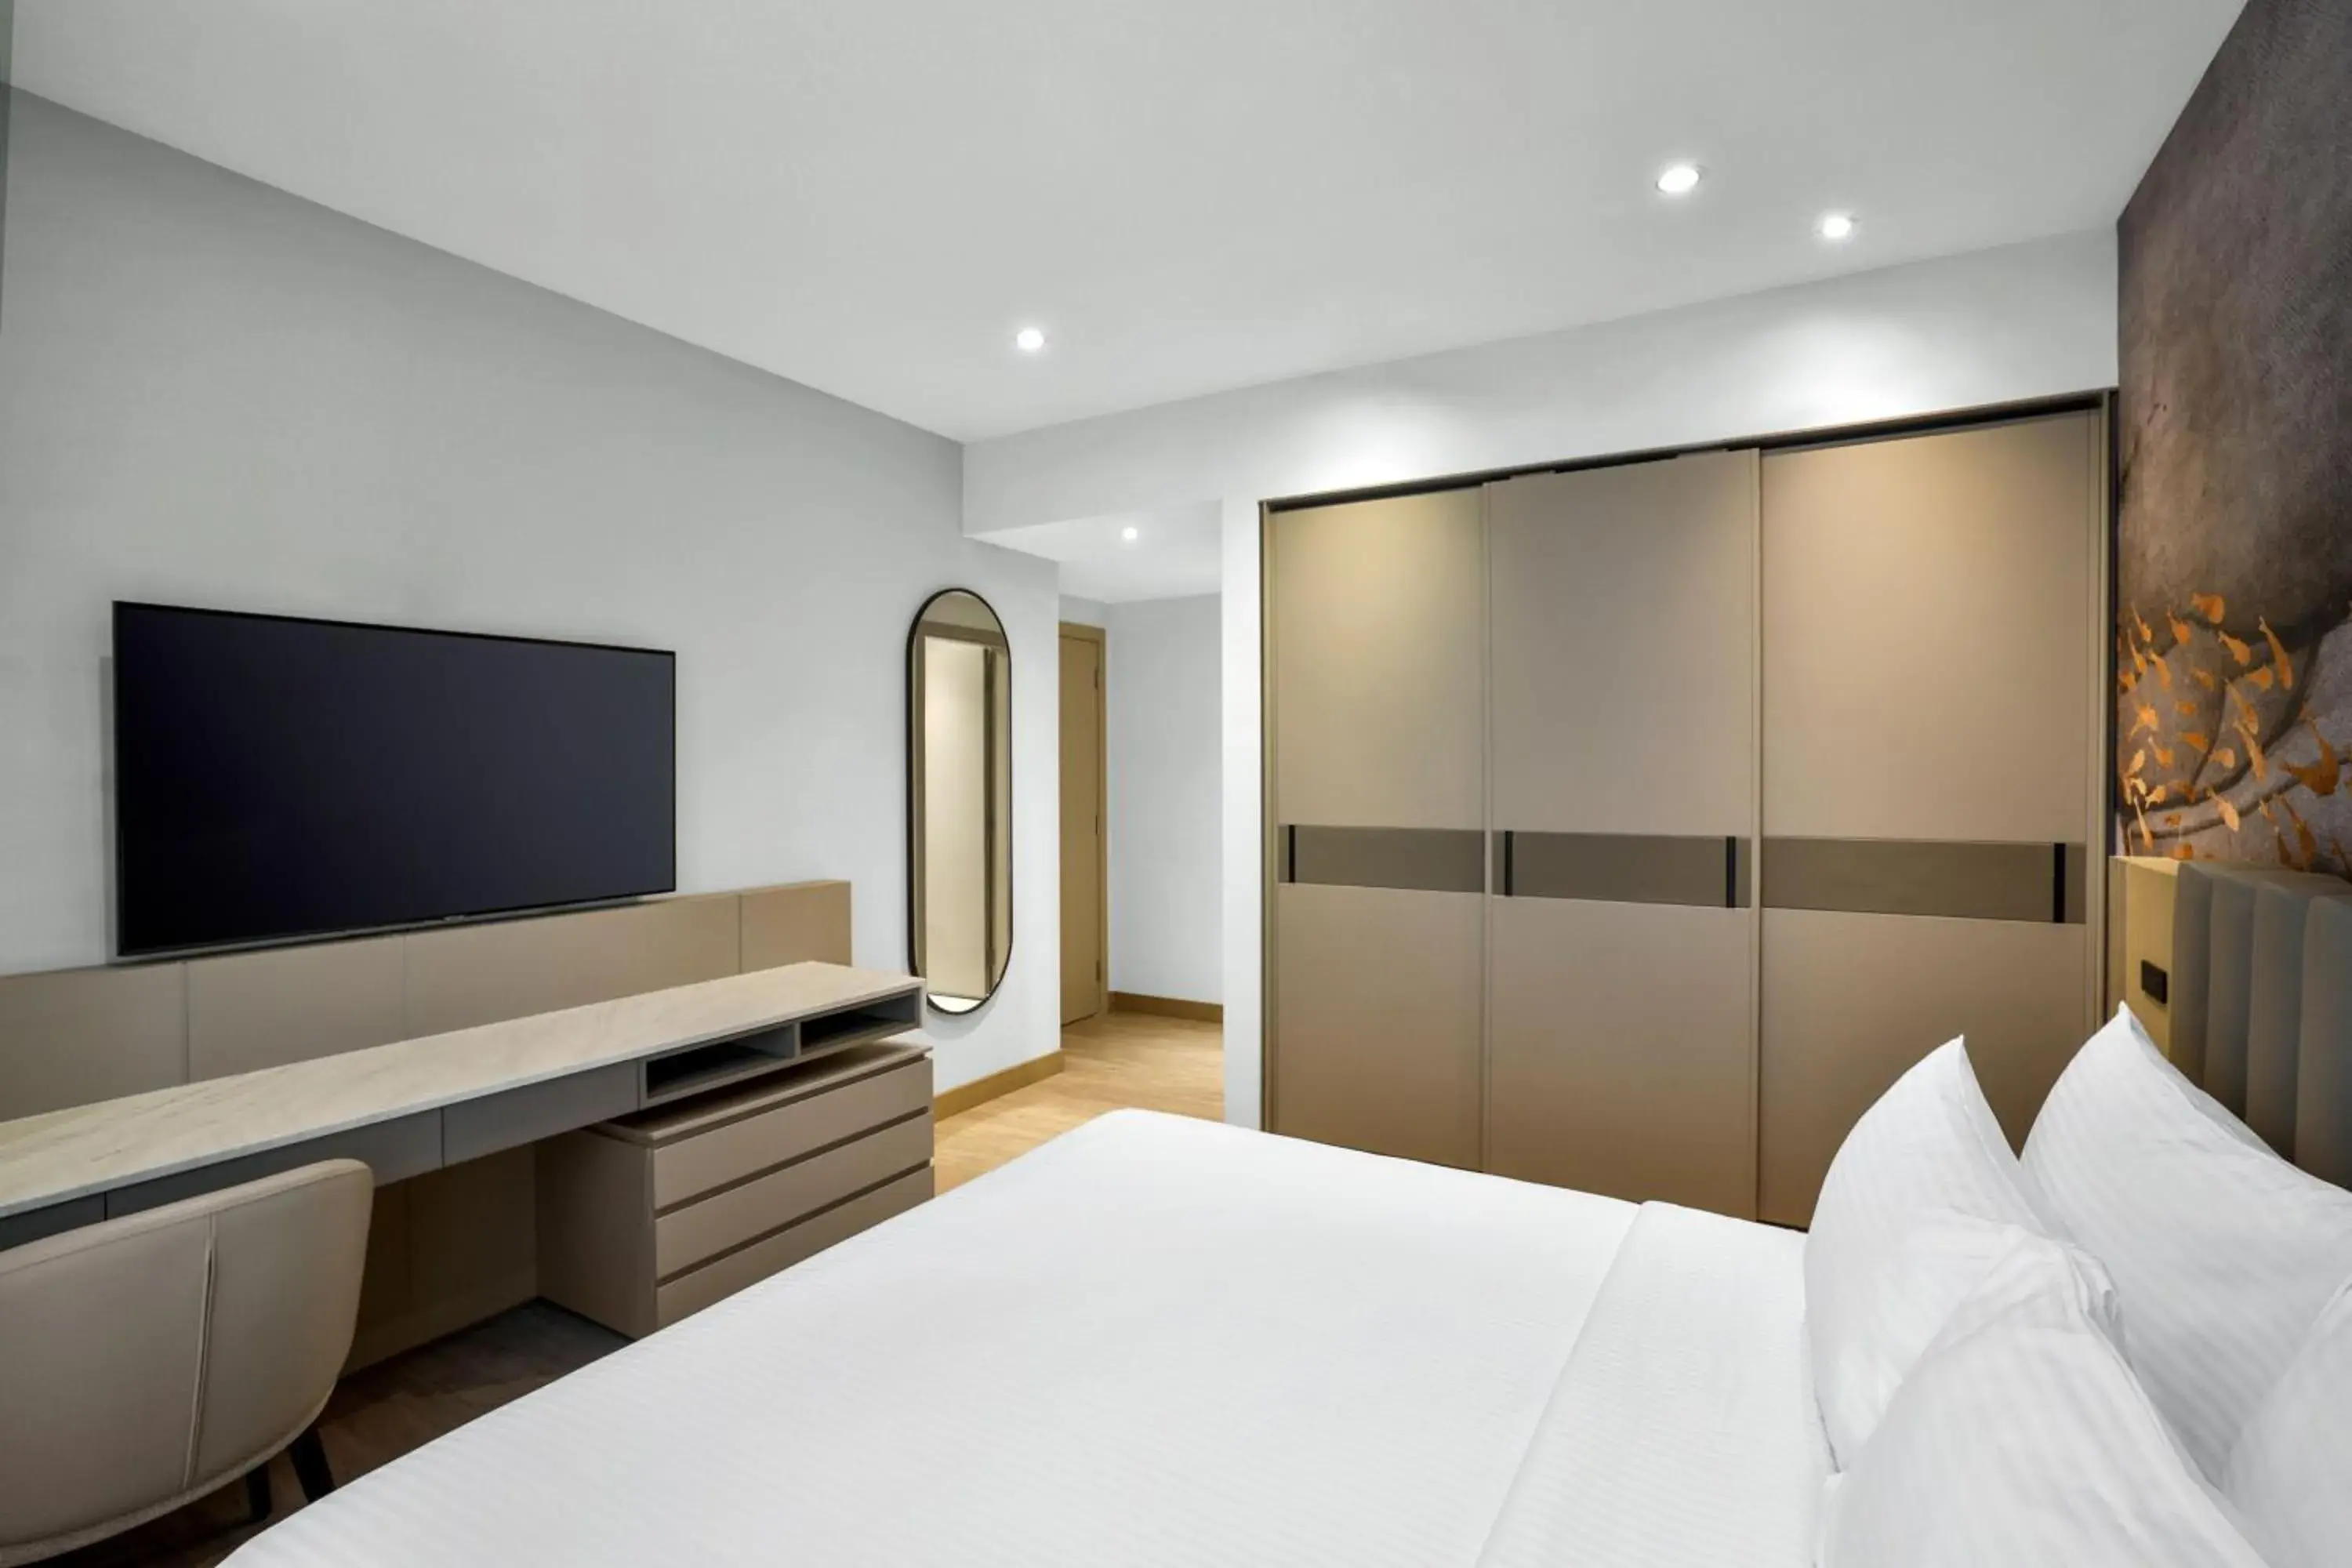 Bedroom, TV/Entertainment Center in Residence Inn by Marriott Sheikh Zayed Road, Dubai